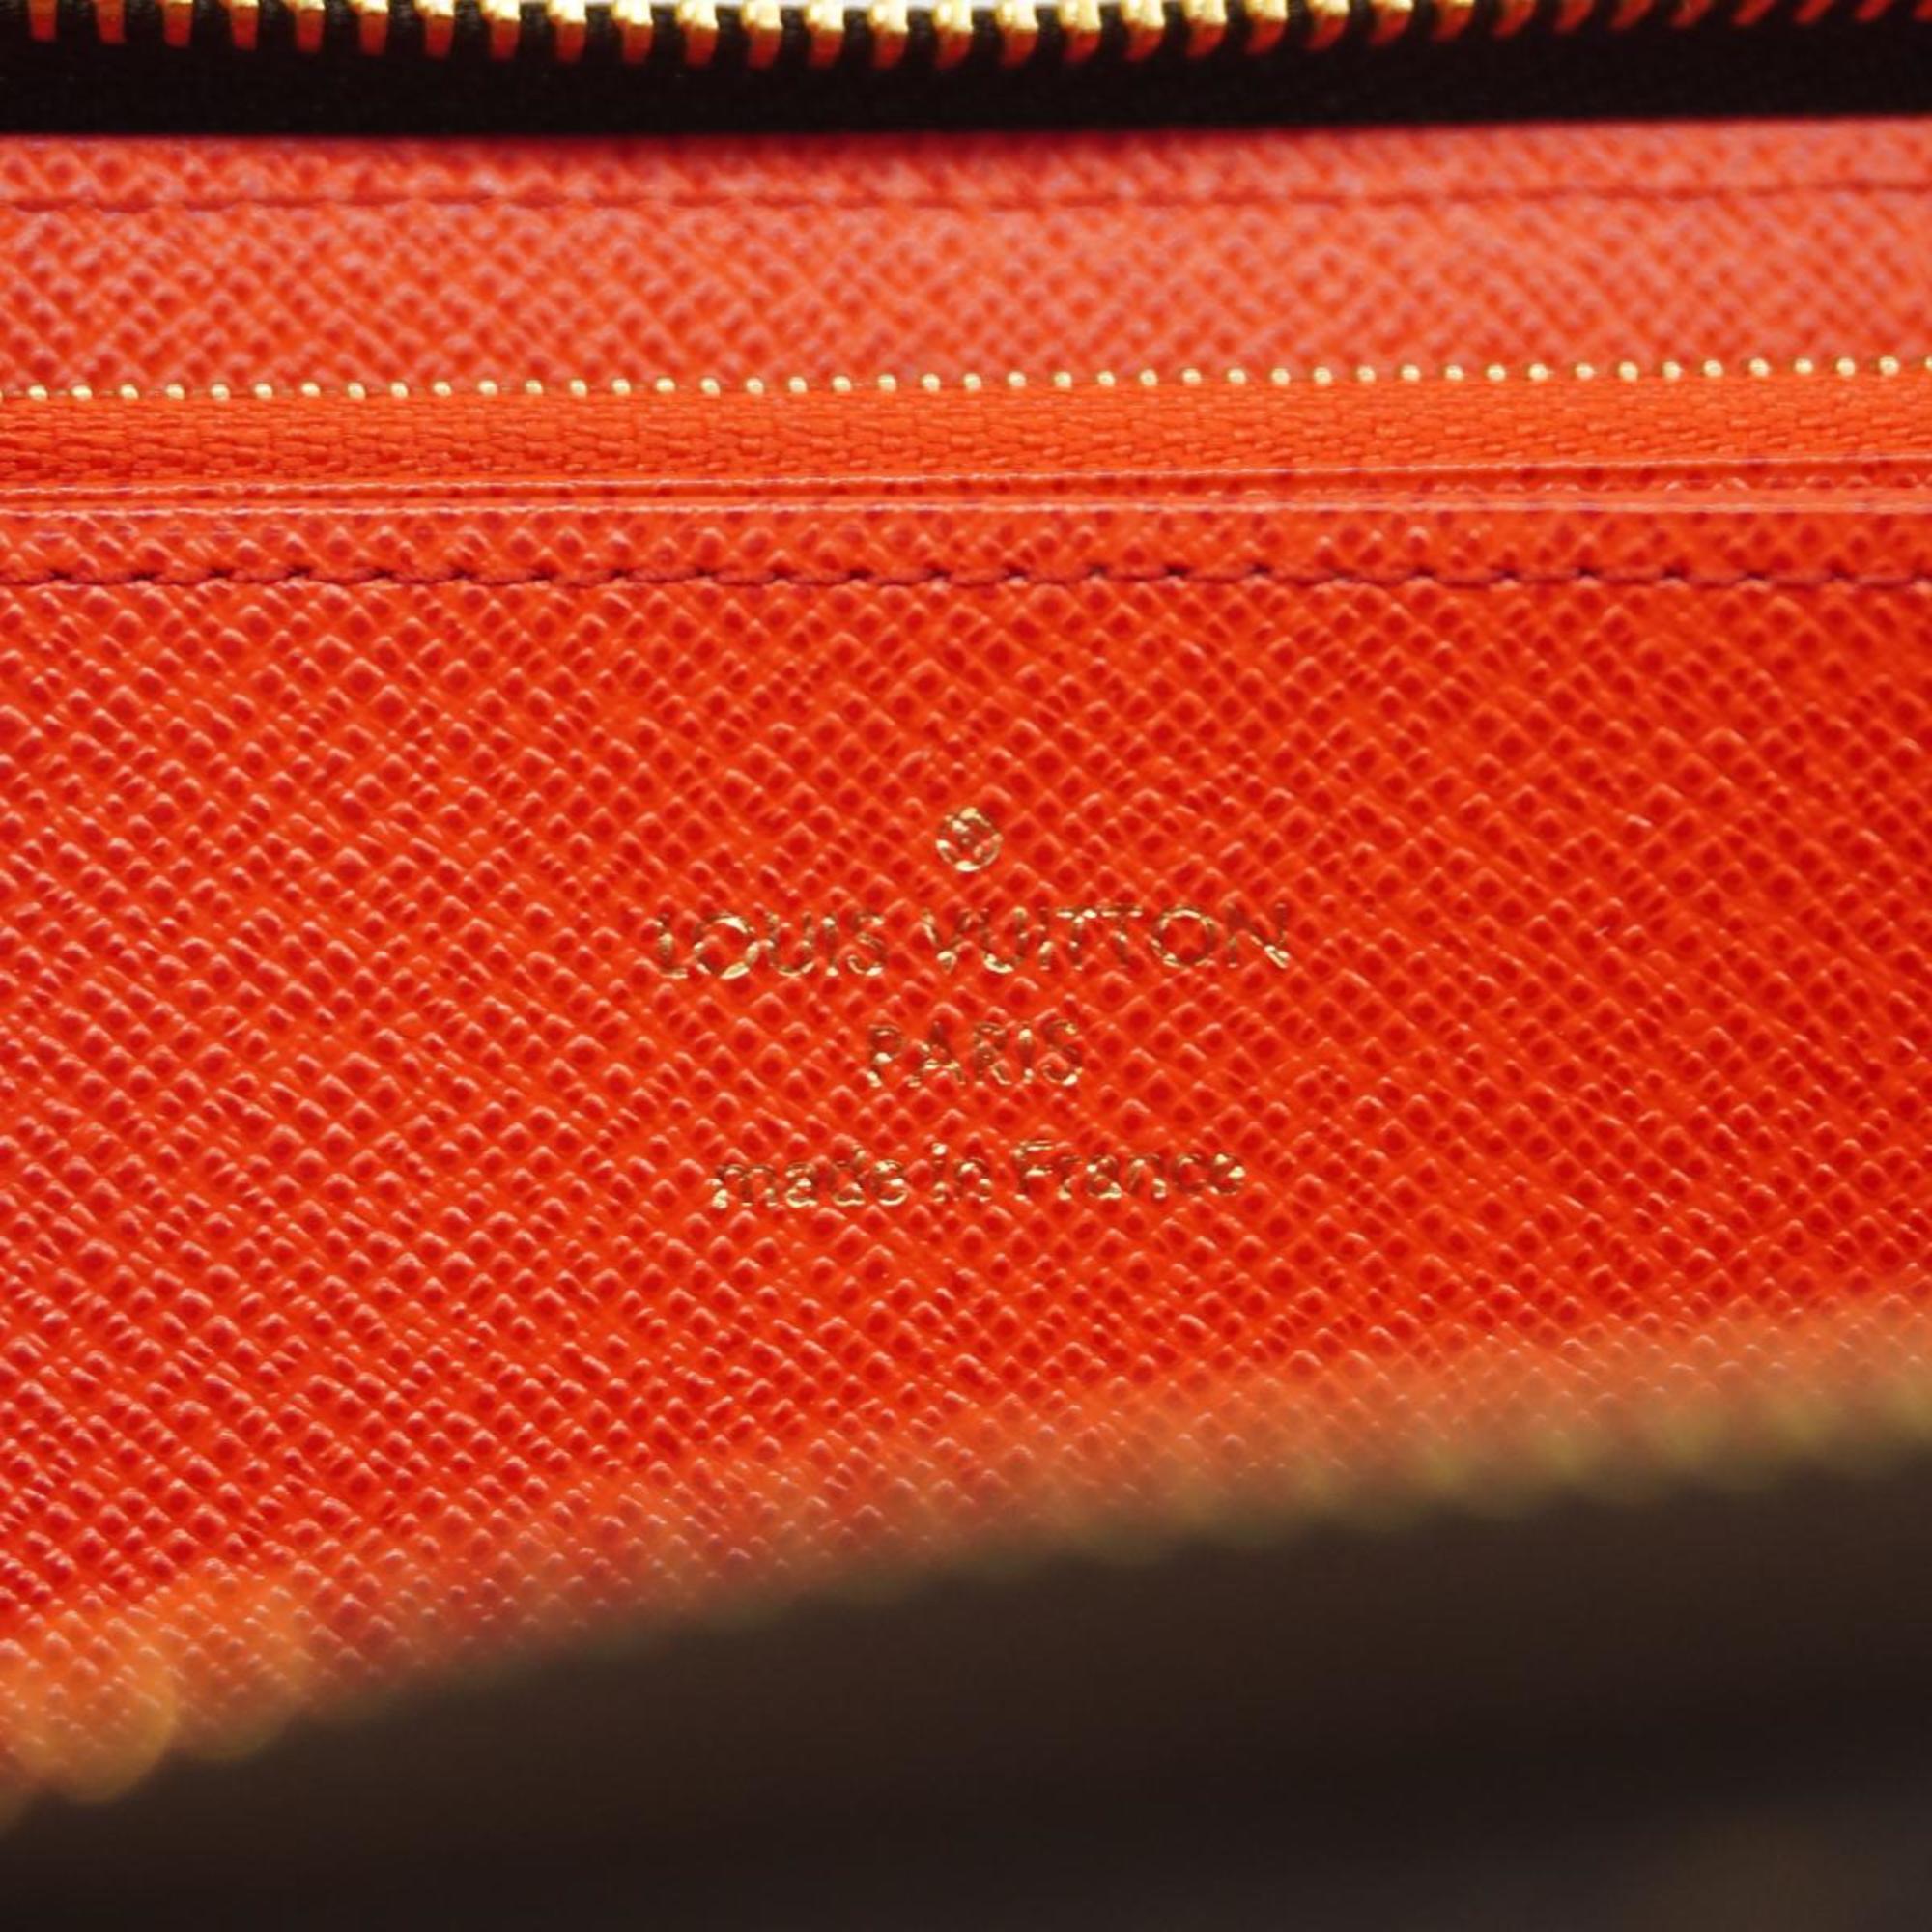 ルイ・ヴィトン(Louis Vuitton) ルイ・ヴィトン 長財布 モノグラム ジッピーウォレット M41896 コクリコメンズ レディース